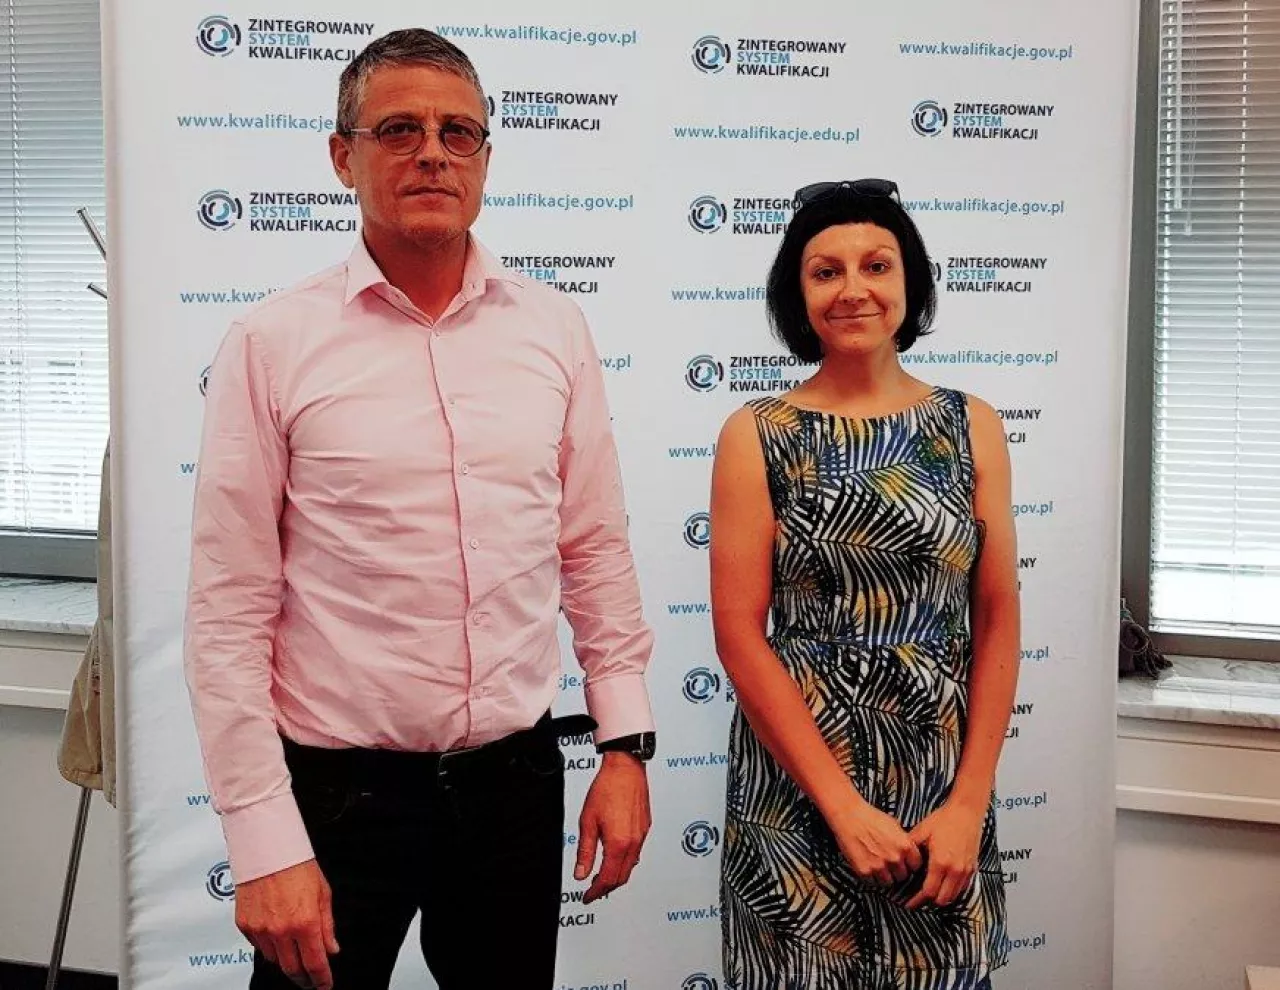 Agnieszka Orzechowska i Piotr Ciepliński, Doradcy Regionalni ds. Zintegrowanego Systemu Kwalifikacji (fot. wiadomoscihandlowe.pl)